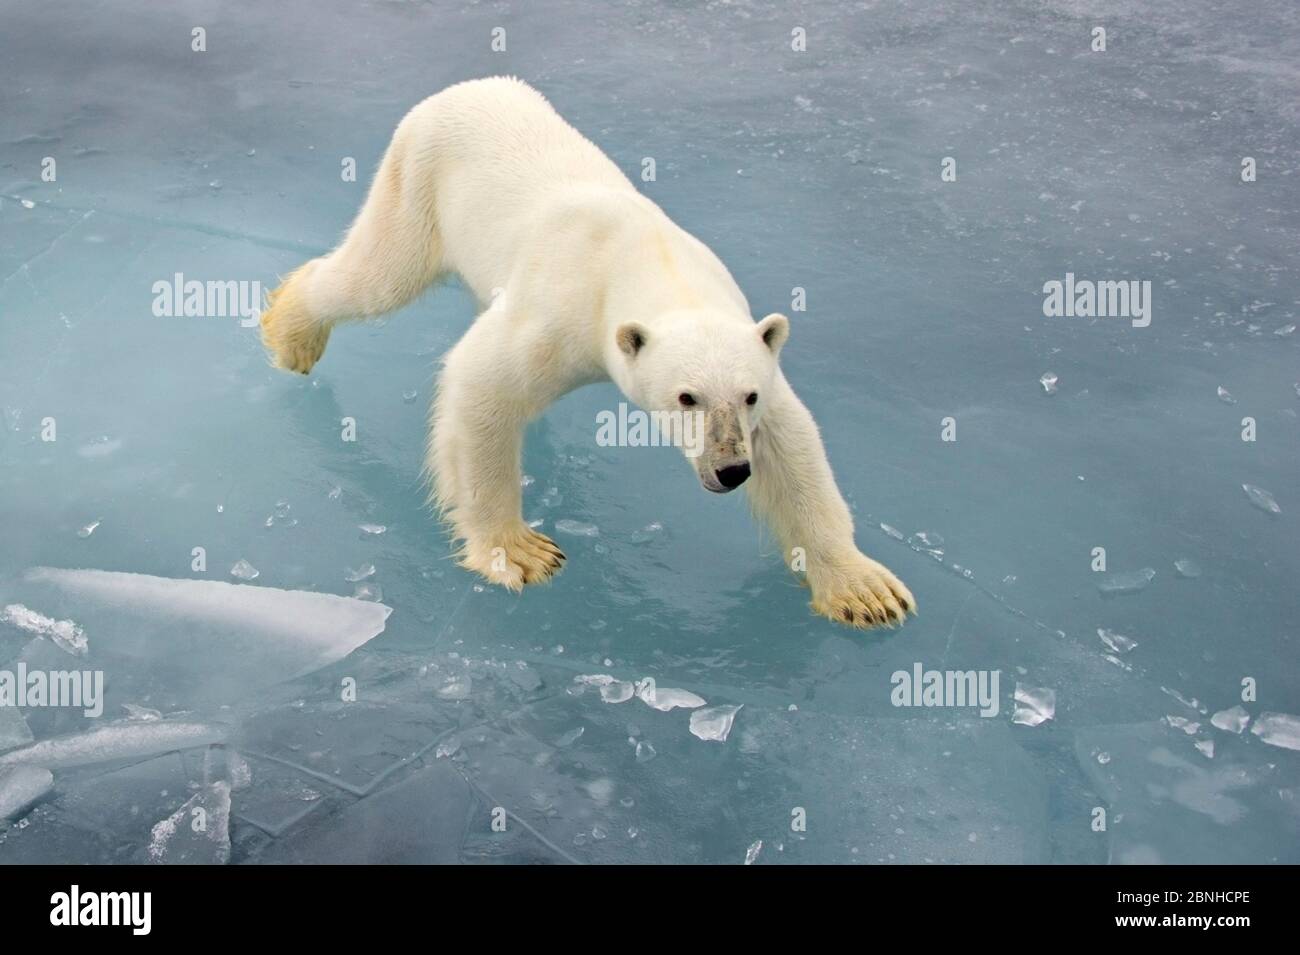 Eisbär (Ursus maritimus) auf Packeis, Spitzbergen, Norwegen. Arktis. September. Stockfoto